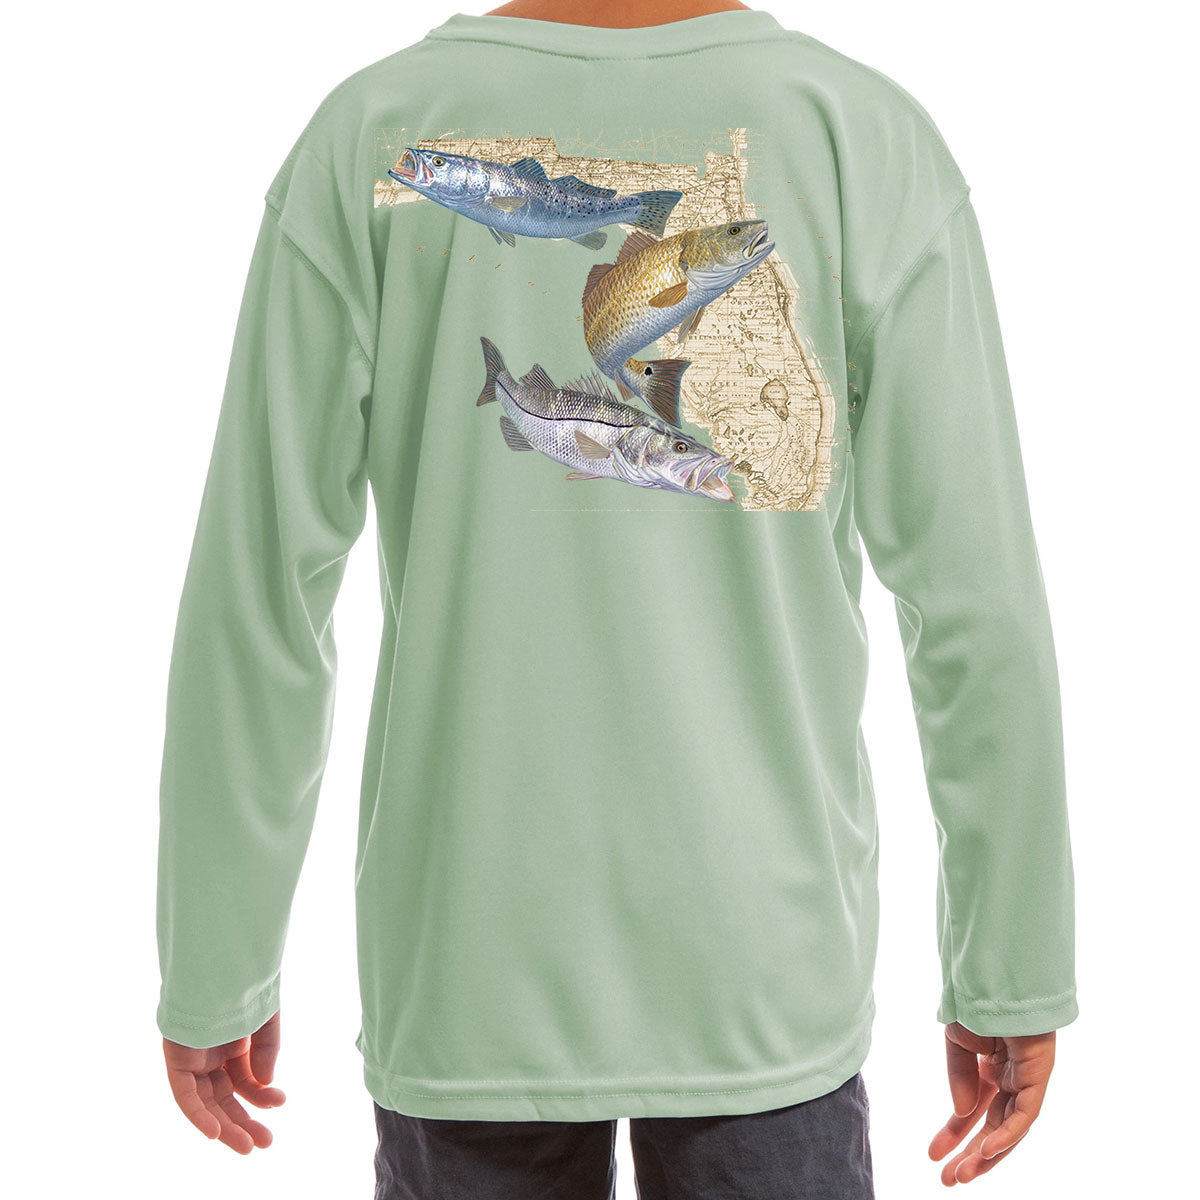 Kids Fishing Shirt, Mountain Trout, Toddler Fly Fishing Shirt